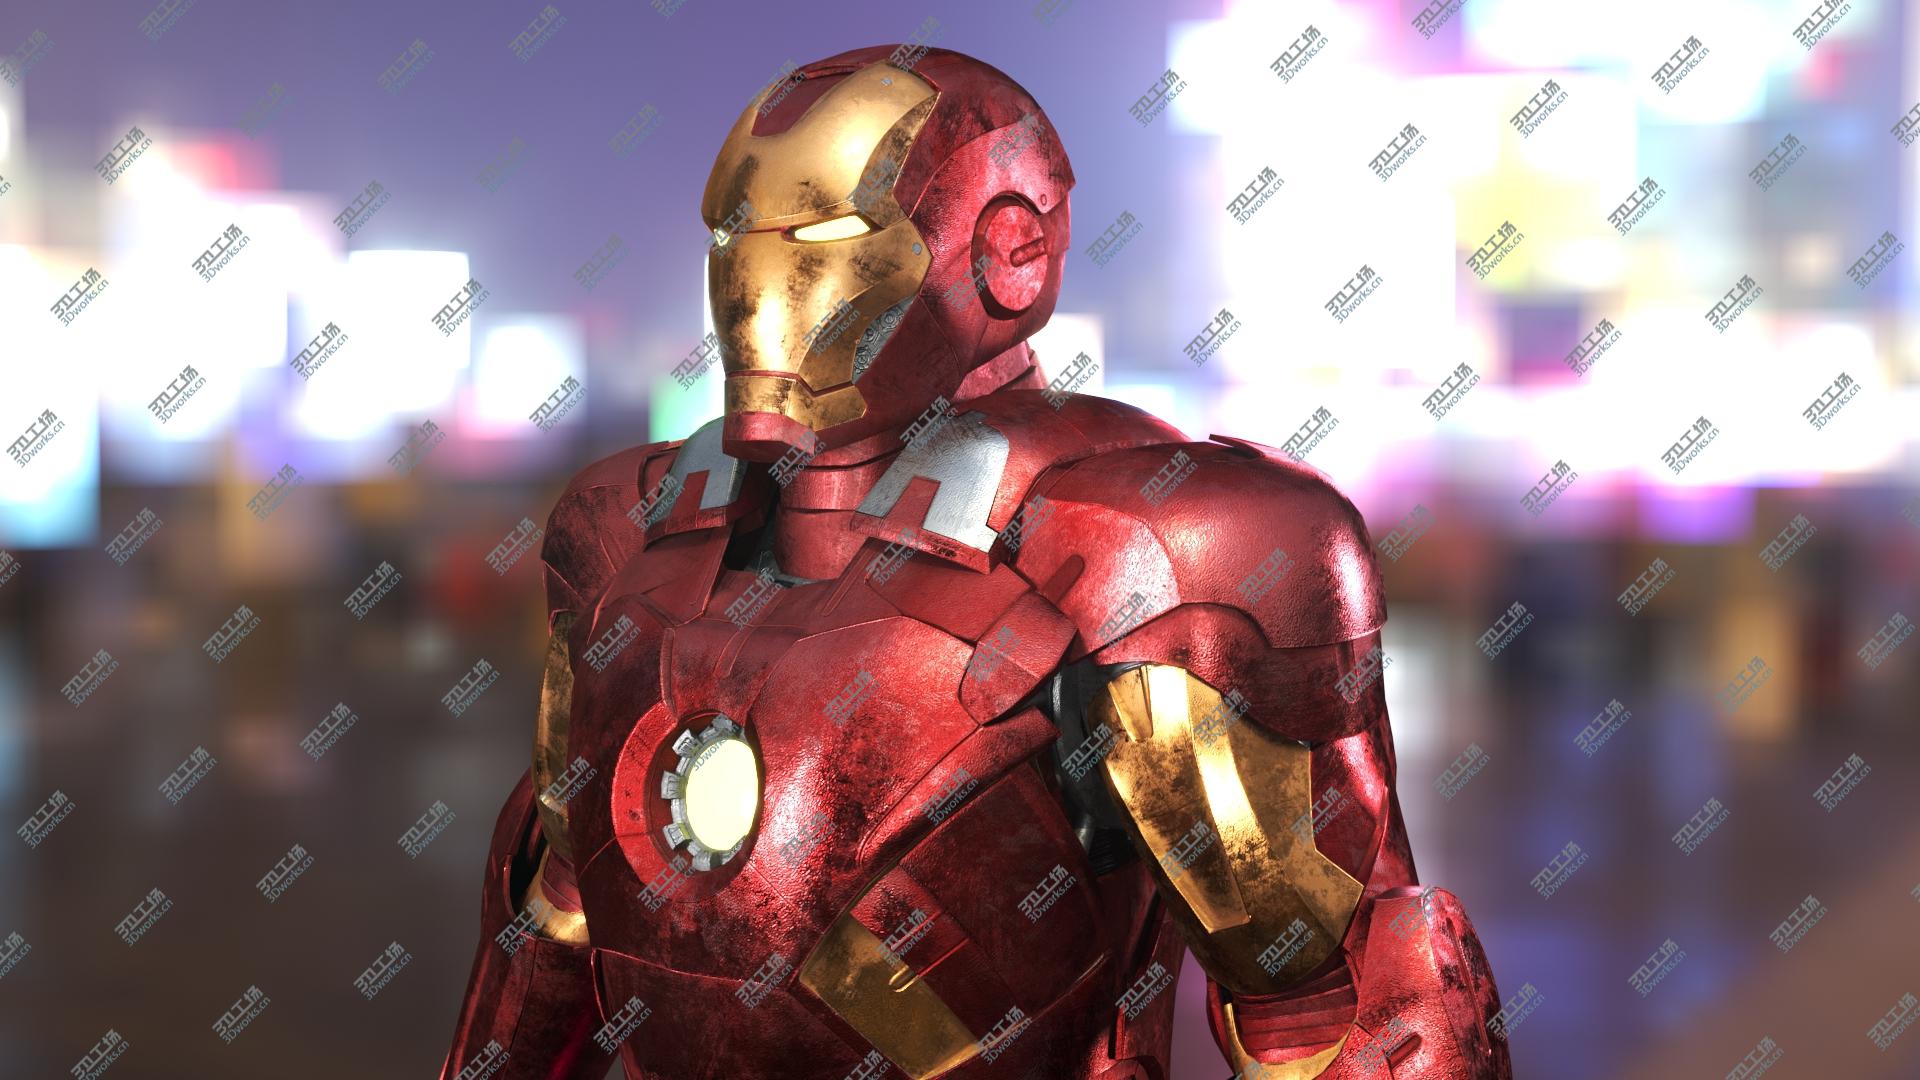 images/goods_img/202104093/3D Iron Man Mark VII model/1.jpg